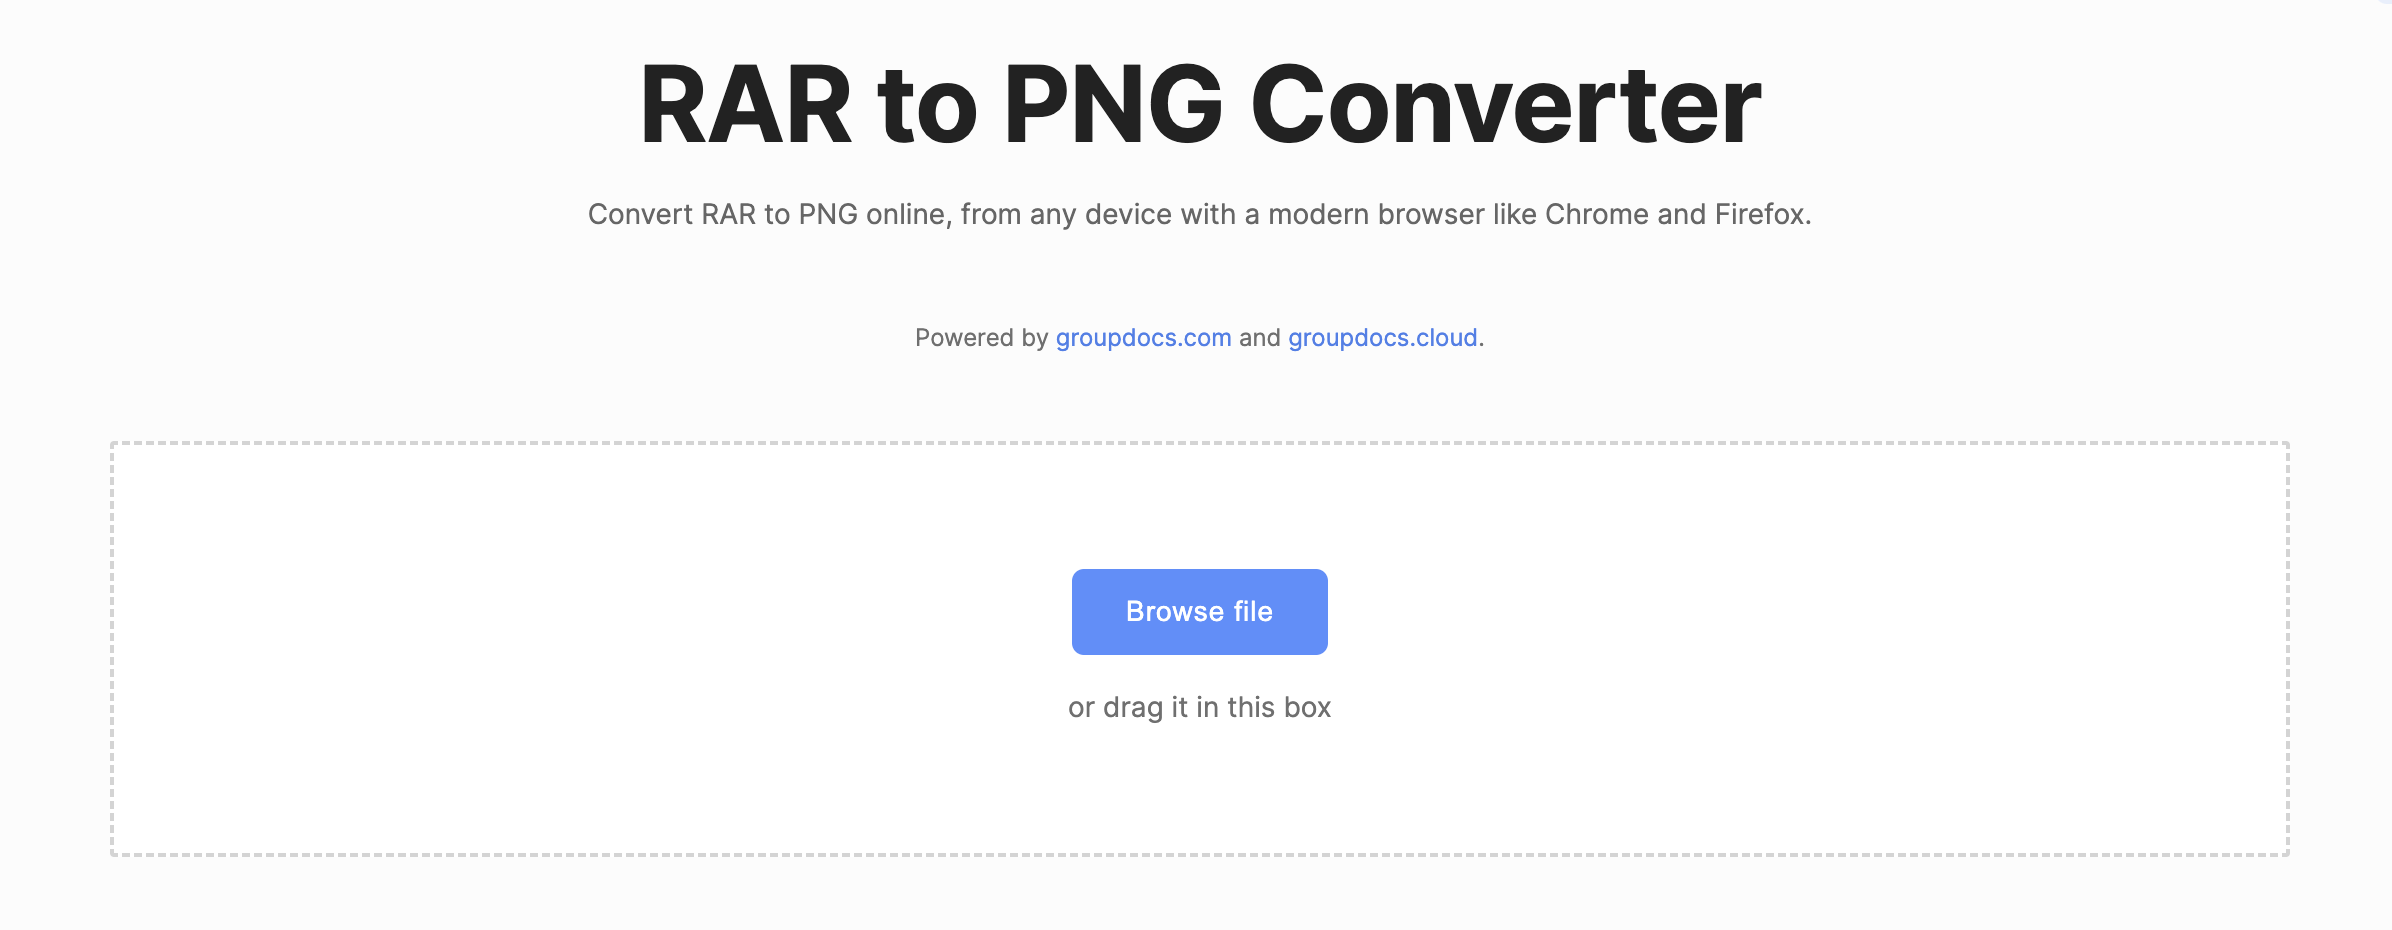 Online-Rar zu PNG-Konverter